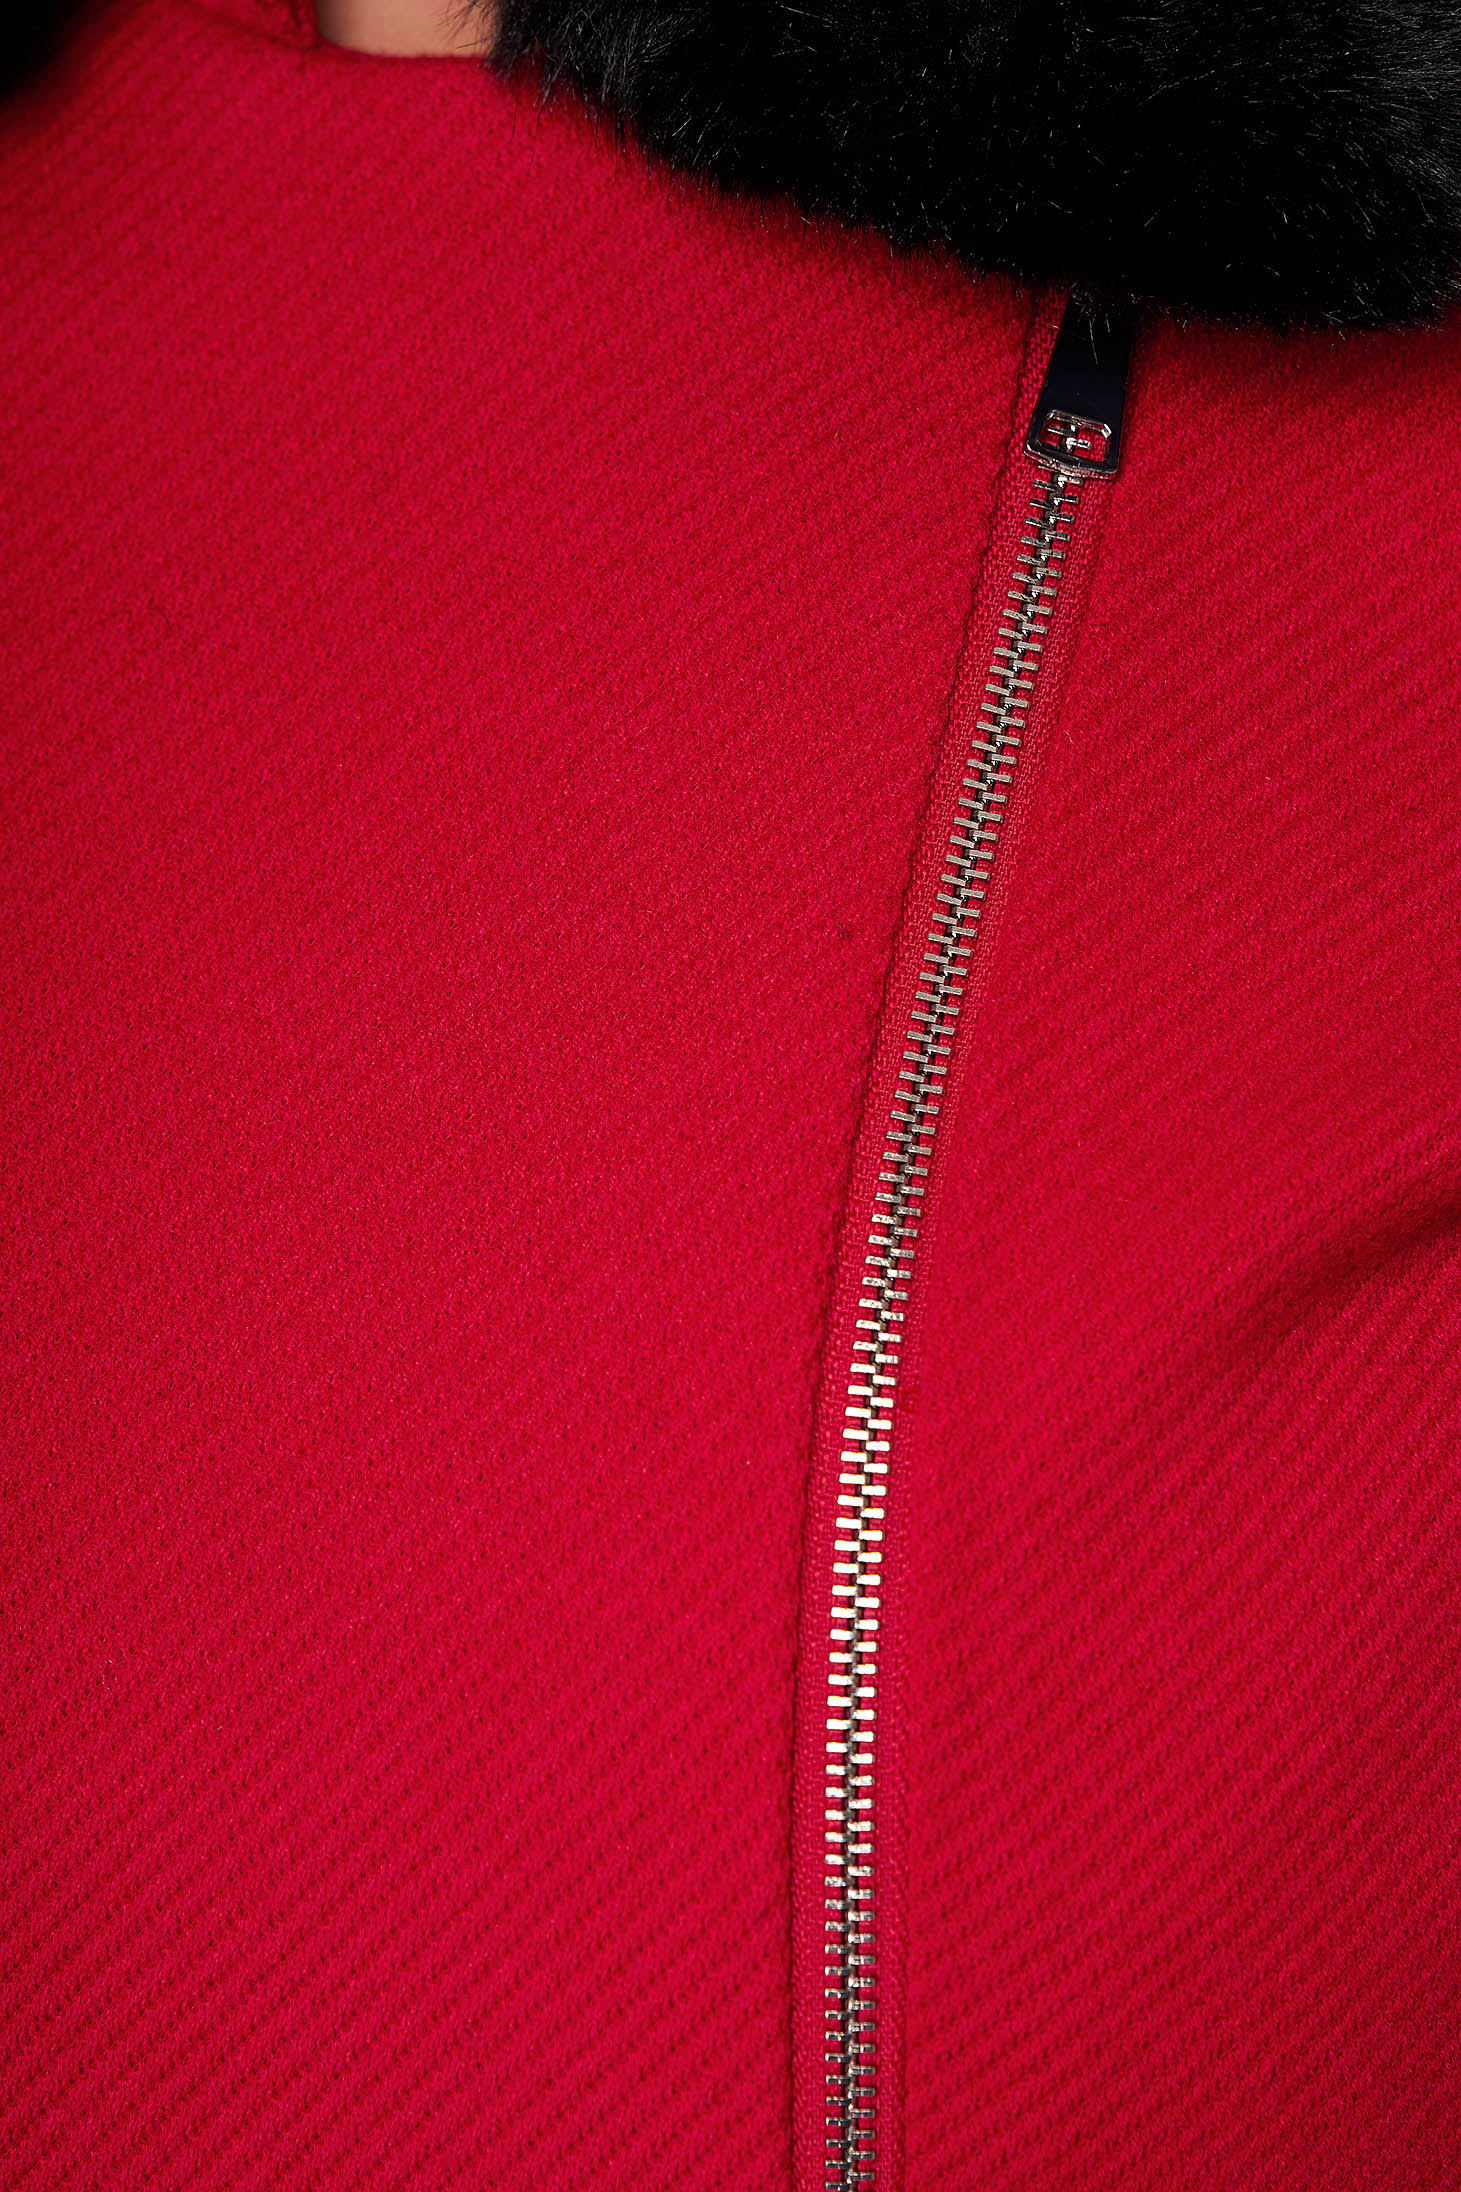 Palton SunShine rosu elegant scurt cu un croi drept din stofa accesorizat cu blana ecologica la guler 4 - StarShinerS.ro